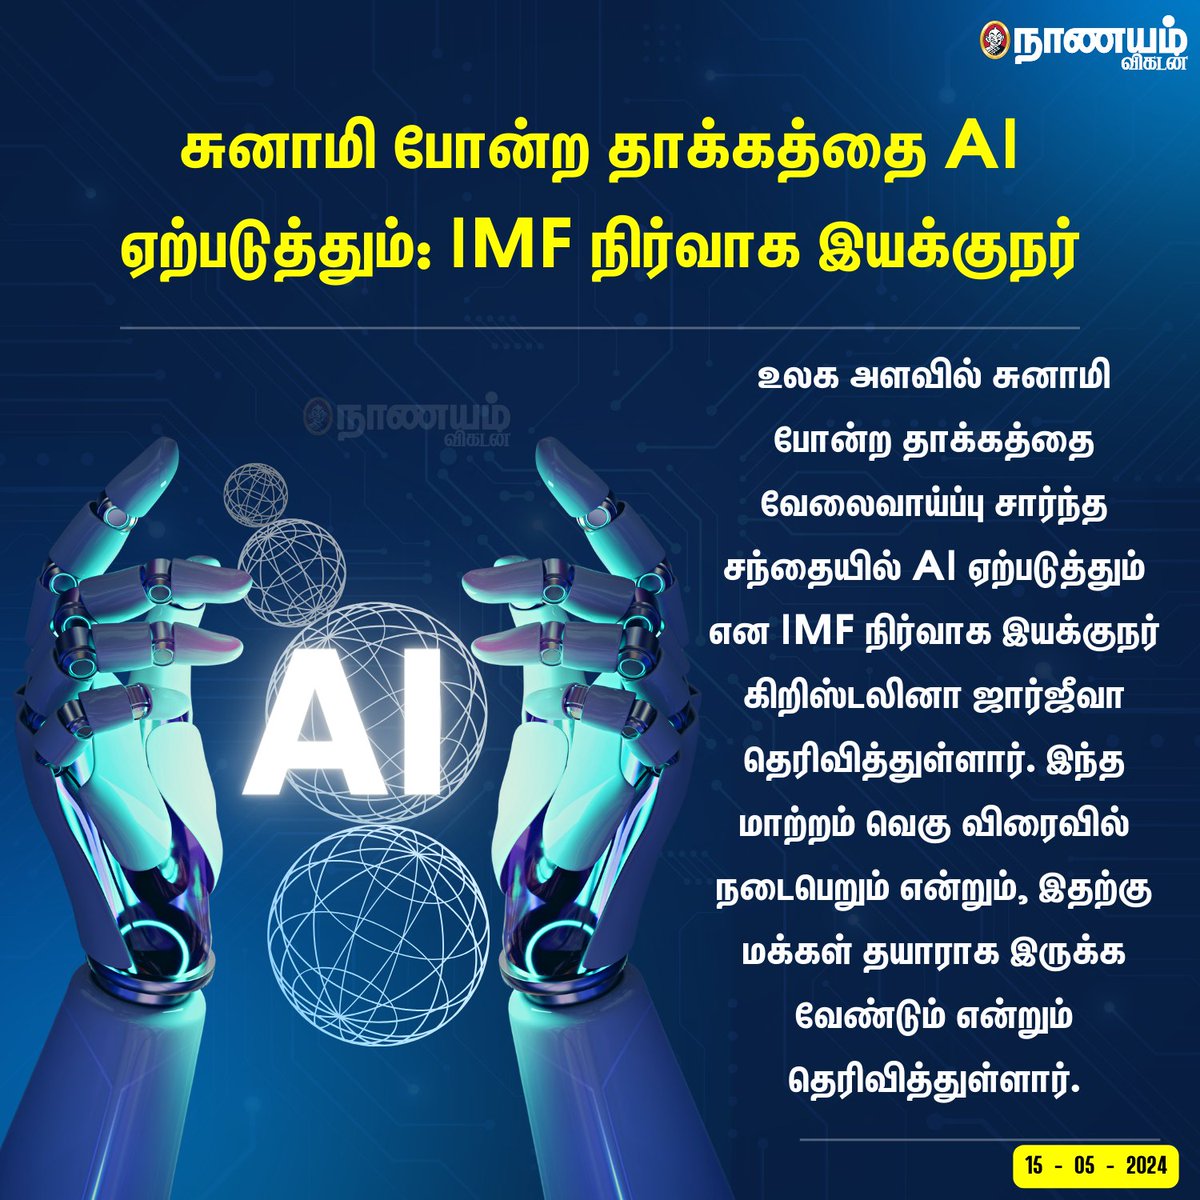 சுனாமி போன்ற தாக்கத்தை AI ஏற்படுத்தும்: IMF நிர்வாக இயக்குநர் #AI #AITechnology #ArtificialIntelligence #IMF #Tsunami